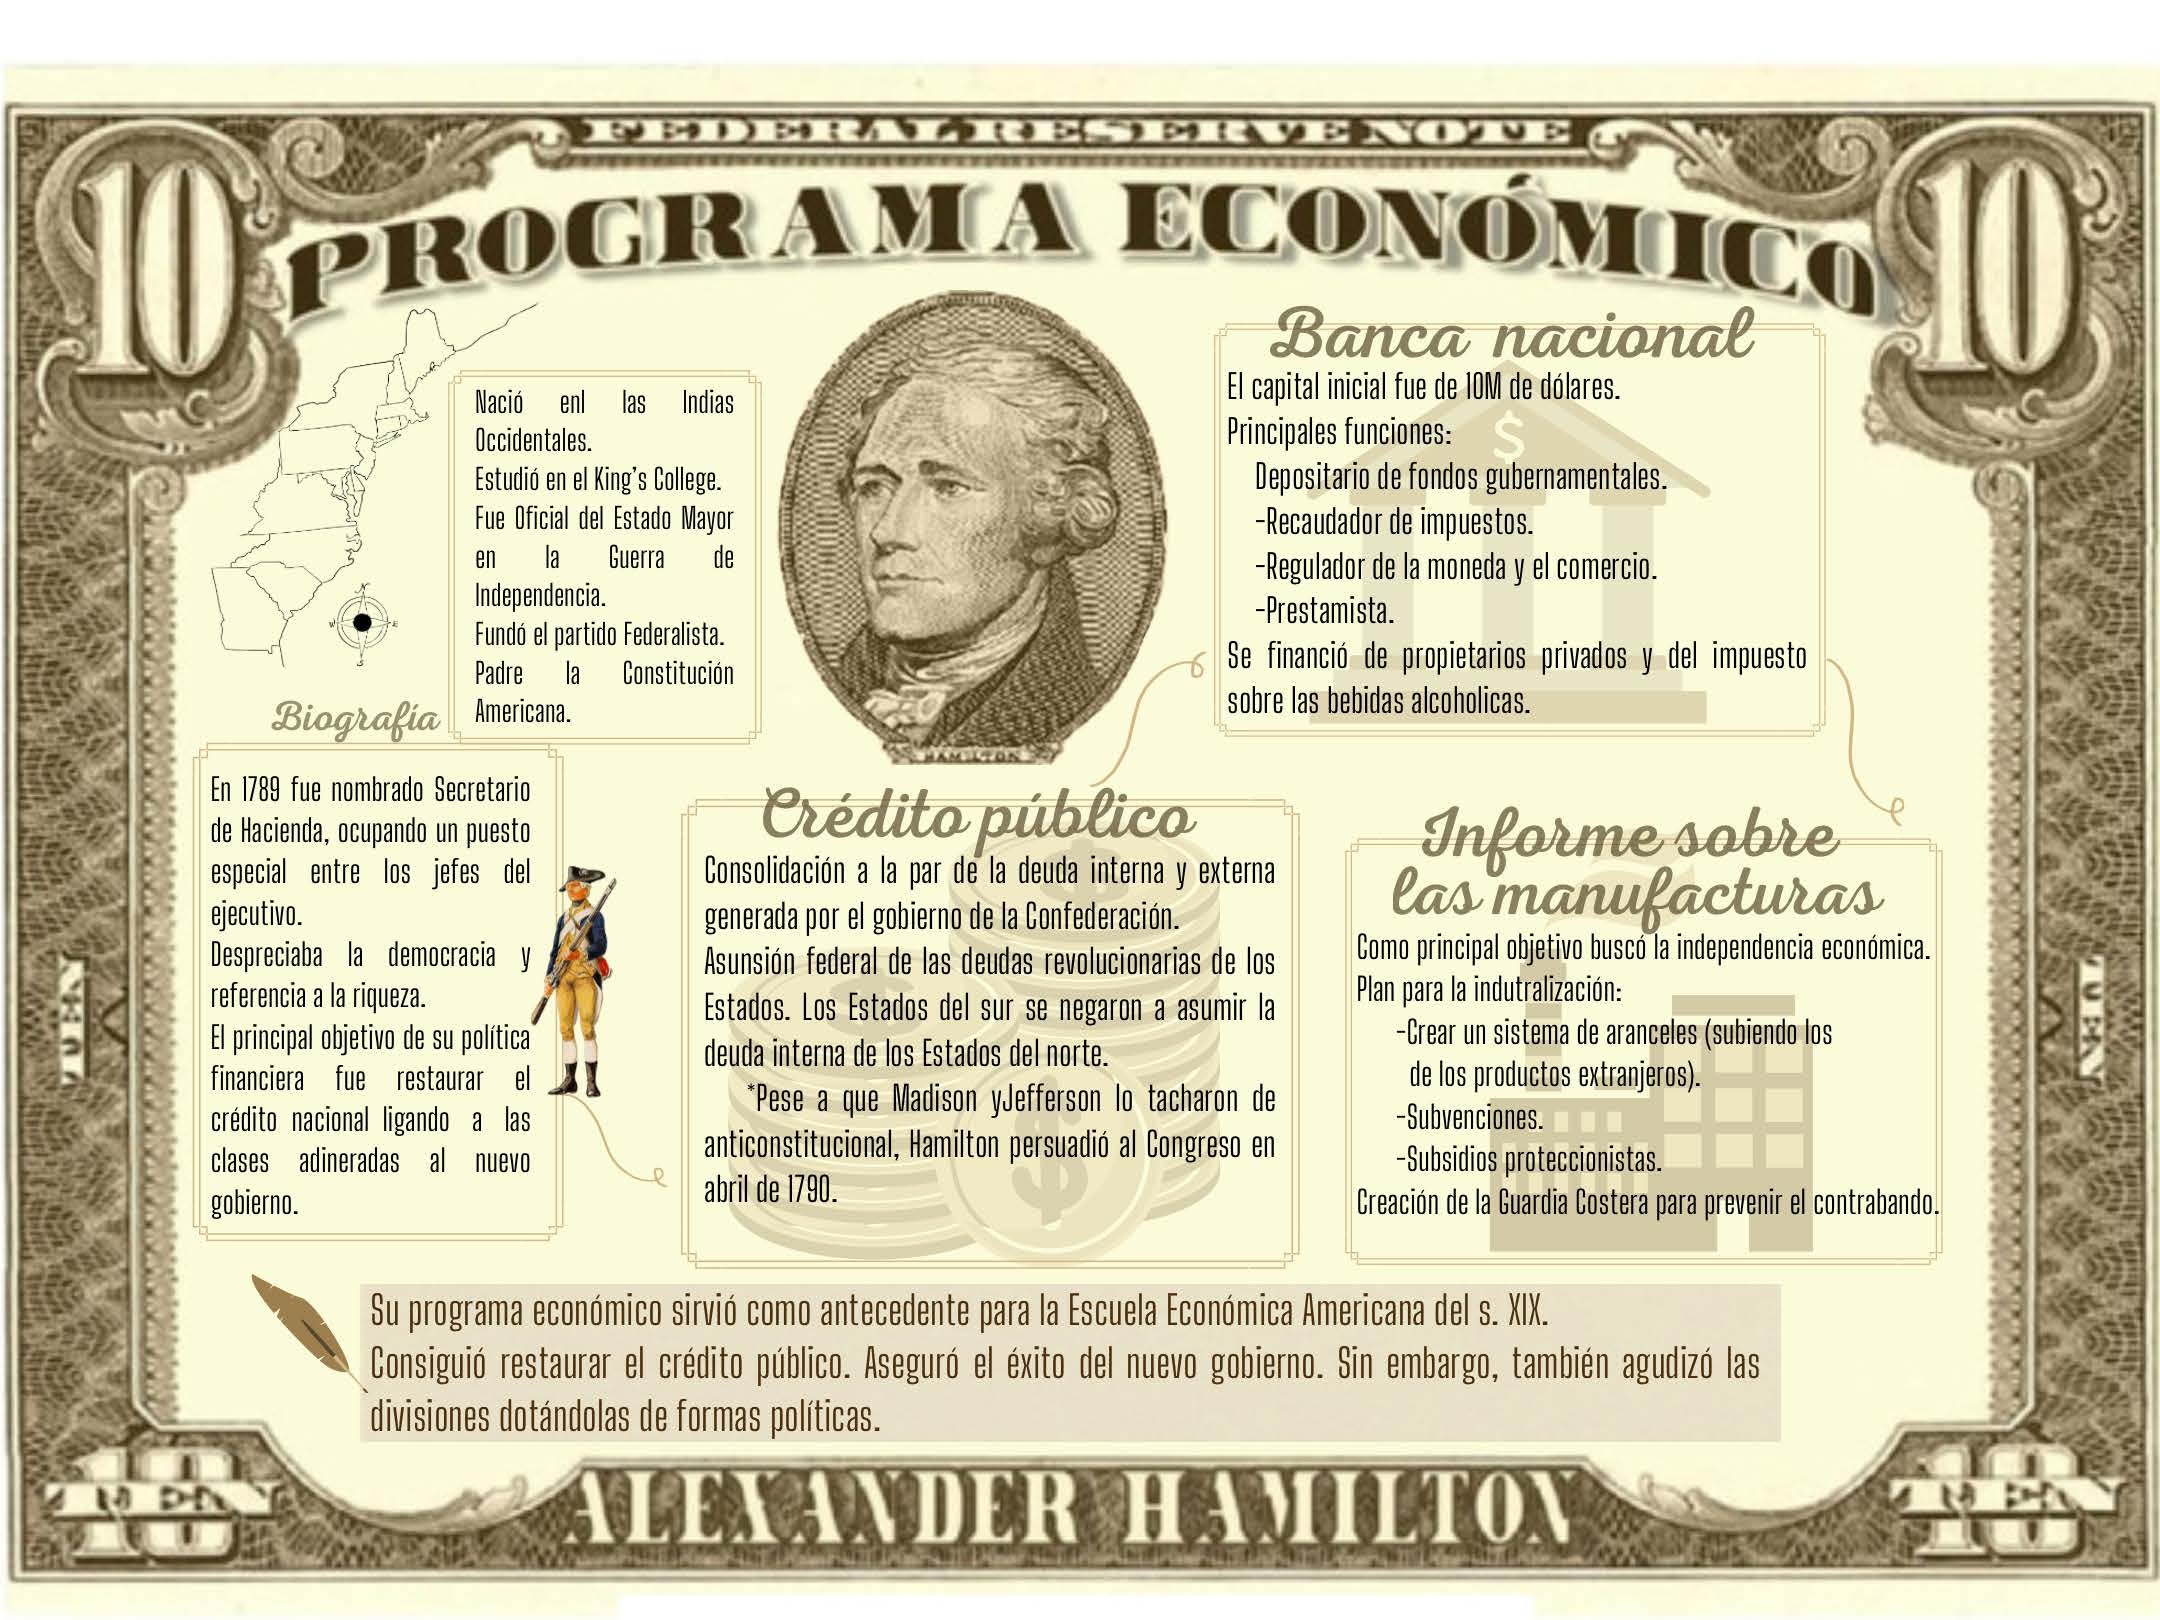 Programa económico de Alexander Hamilton